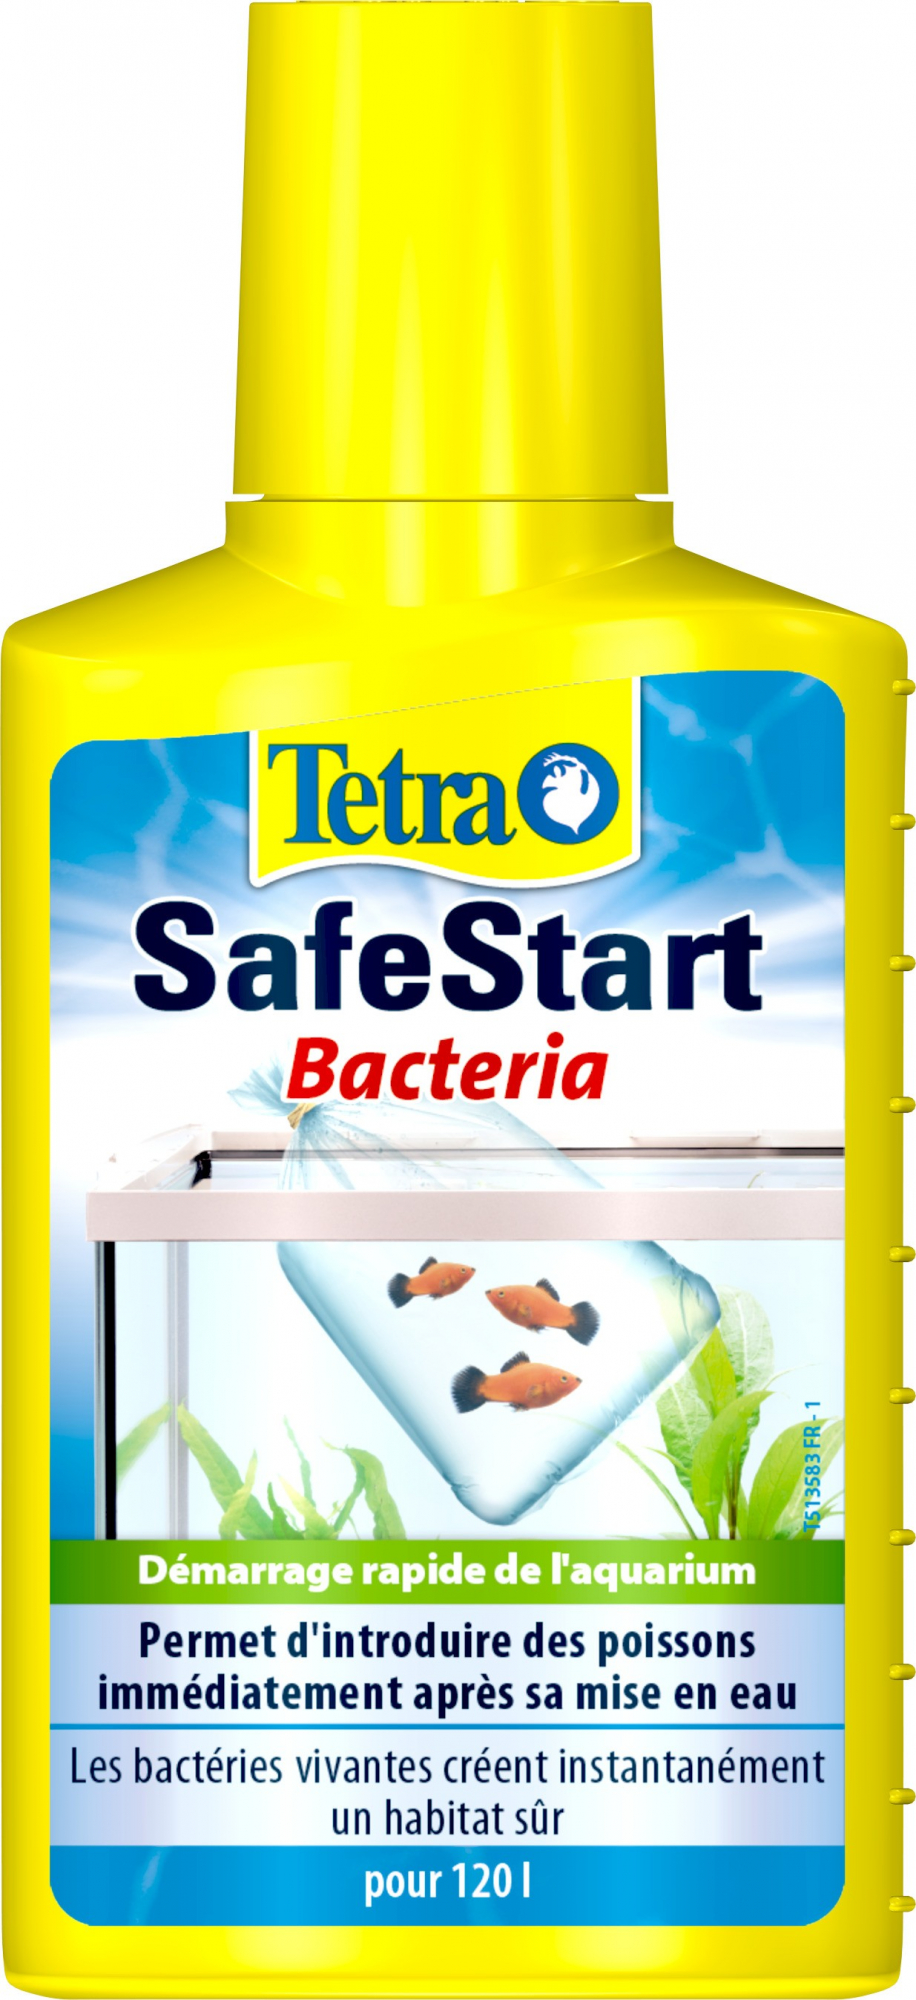 Tetra SafeStart - snelle aquariumopstart